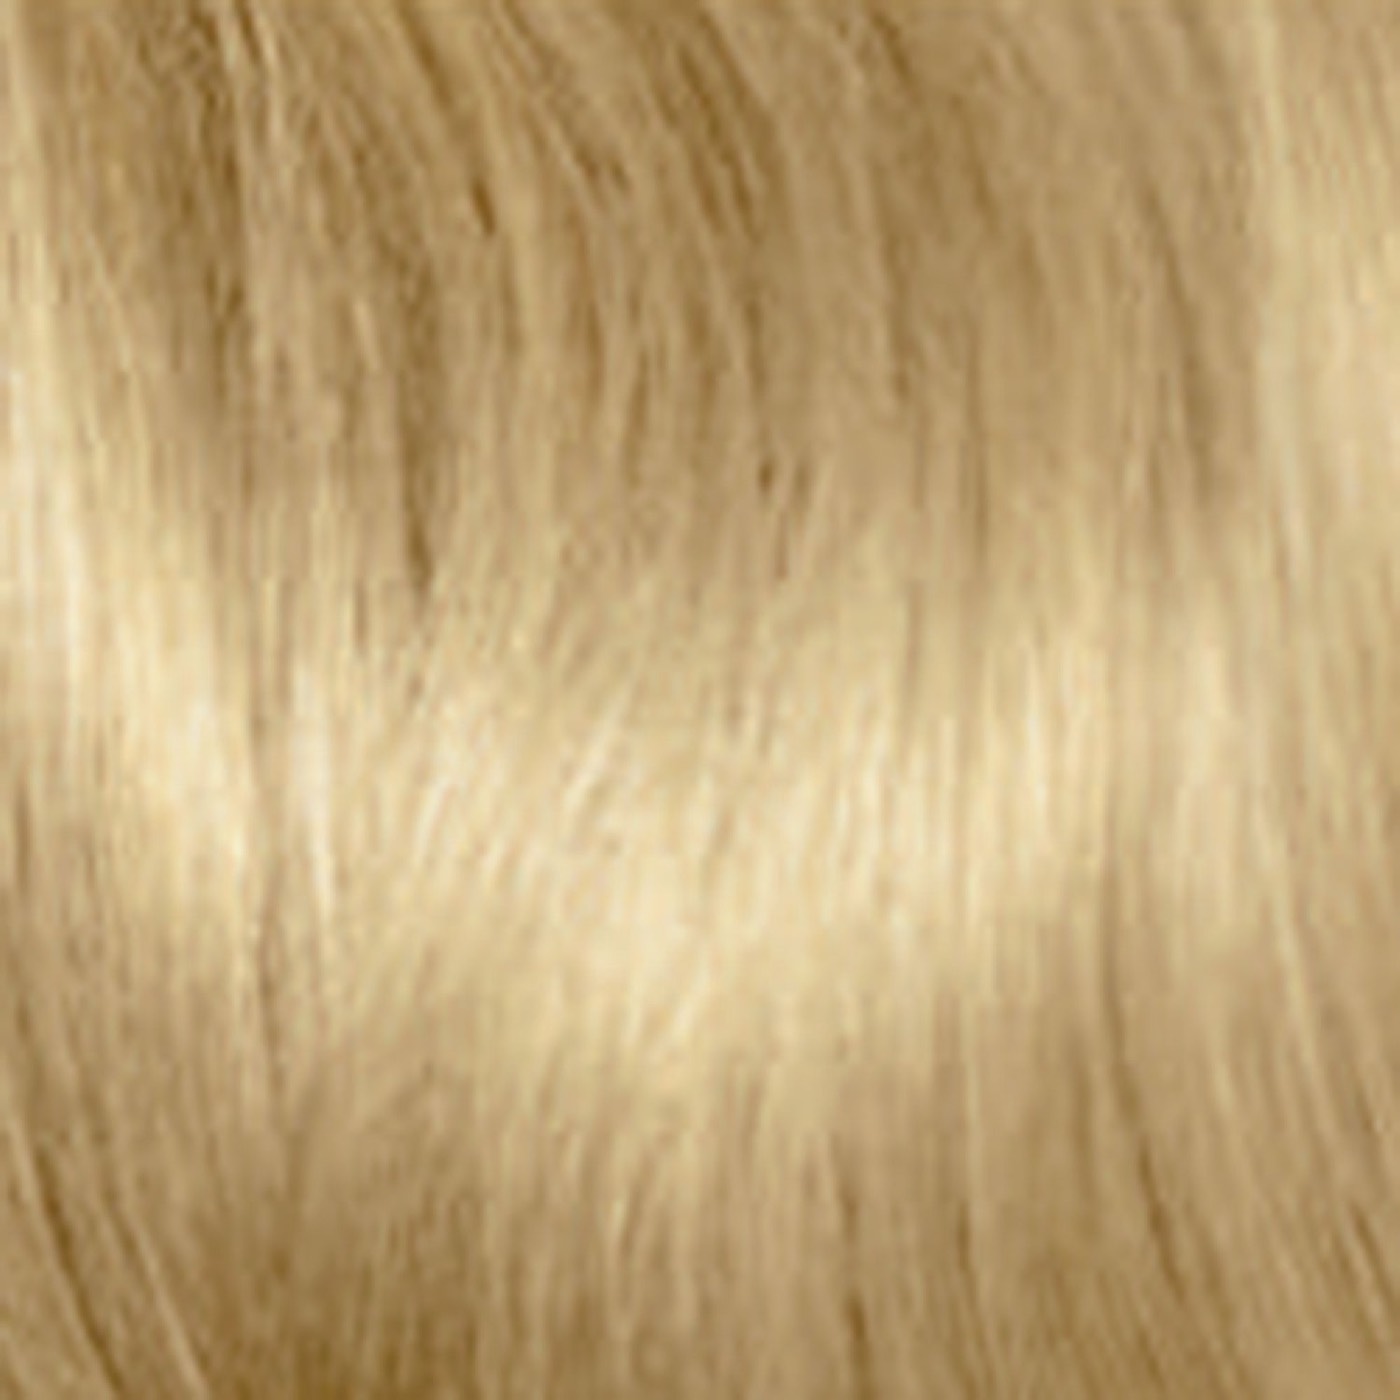 Посмотреть Цвет Волос По Фото Онлайн